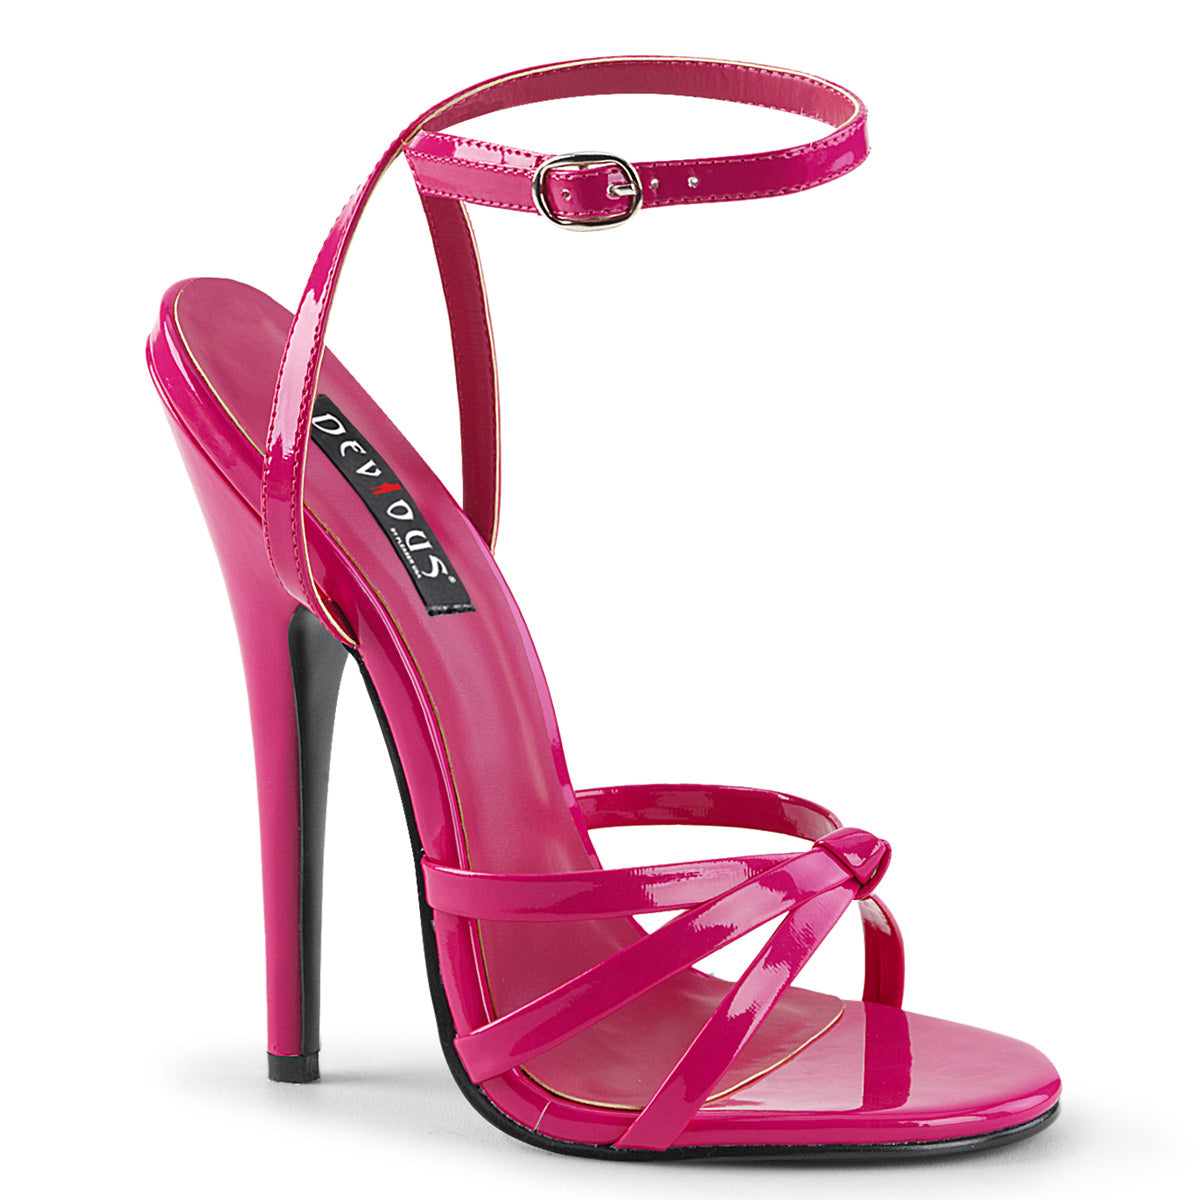 DOMINA-108 Hot Pink 6 Inch Heel Sandals